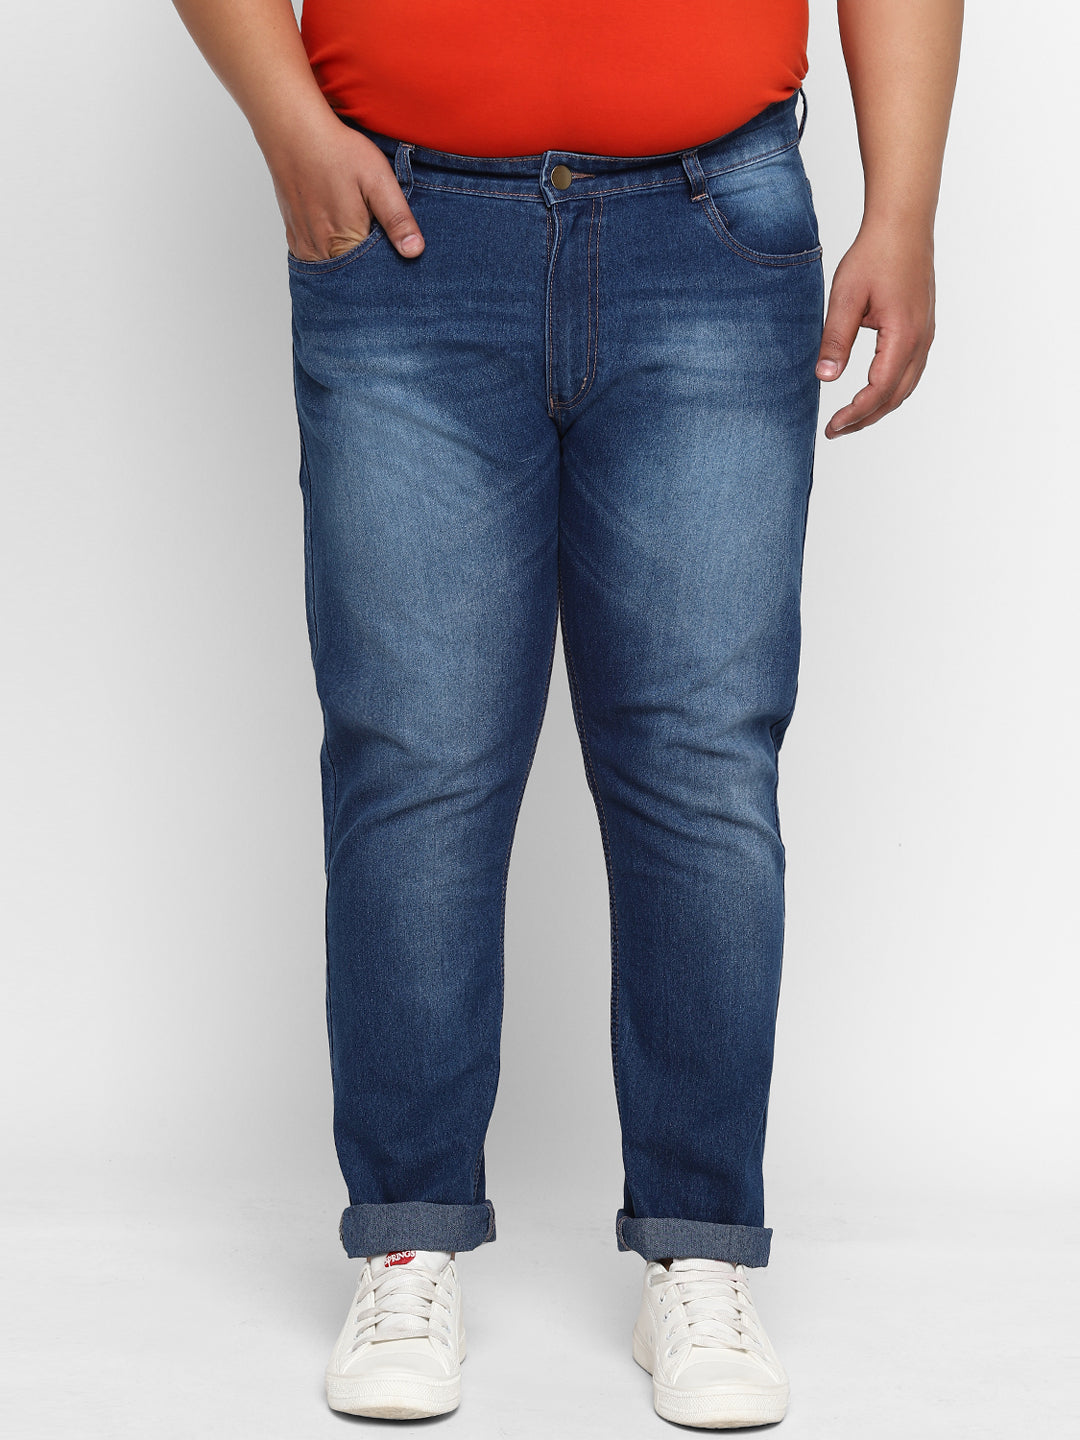 Plus Men's Blue Regular Fit Denim Jeans Stretchable